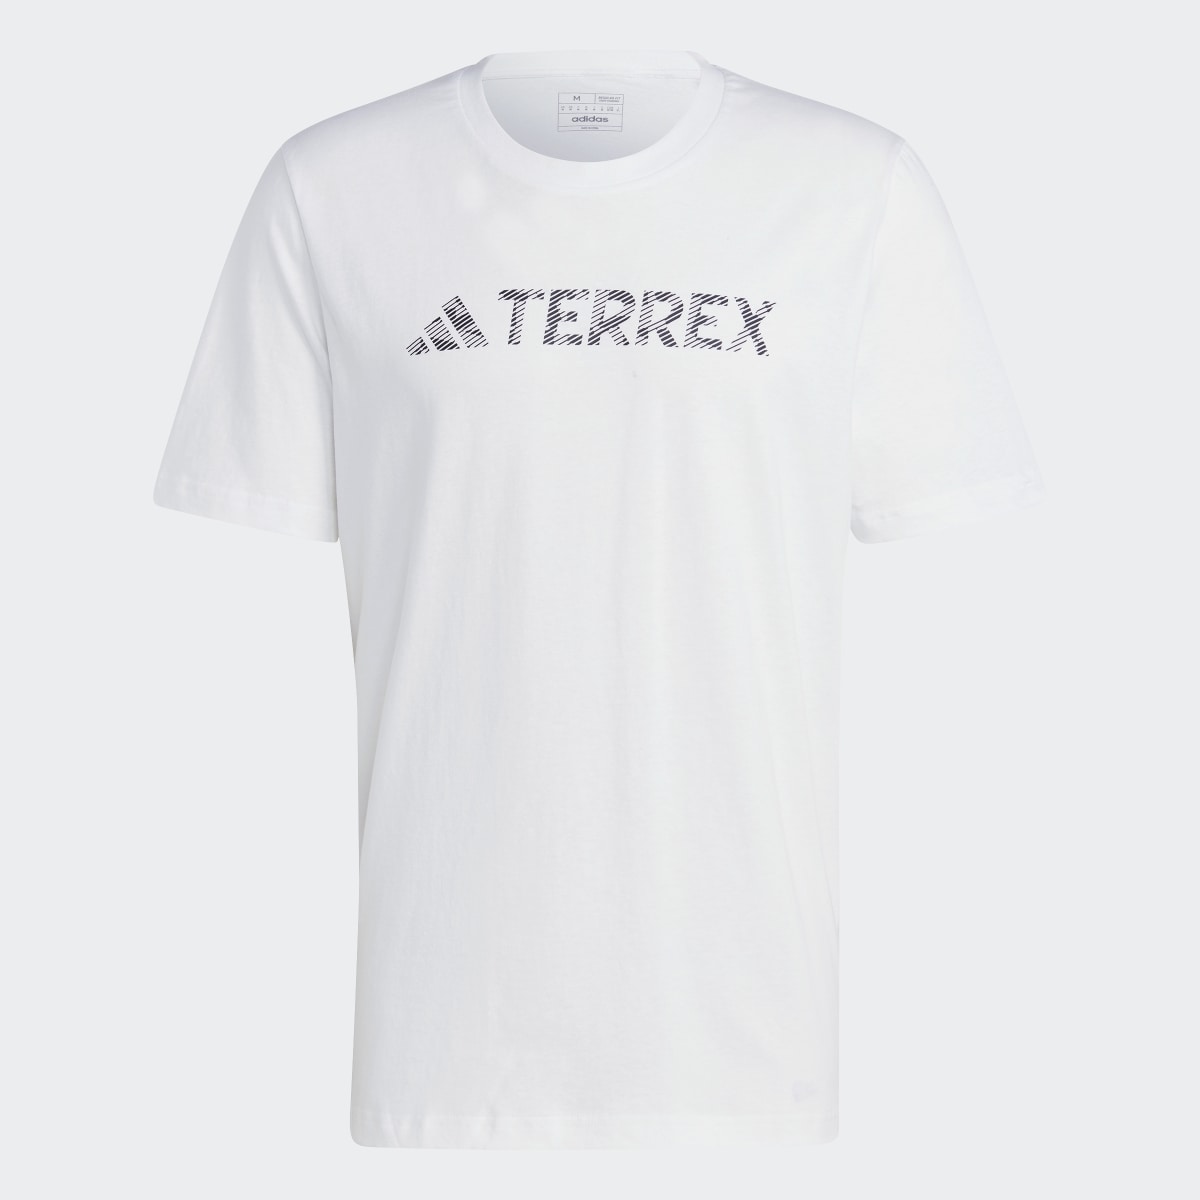 Adidas Camiseta Terrex Classic Logo. 5